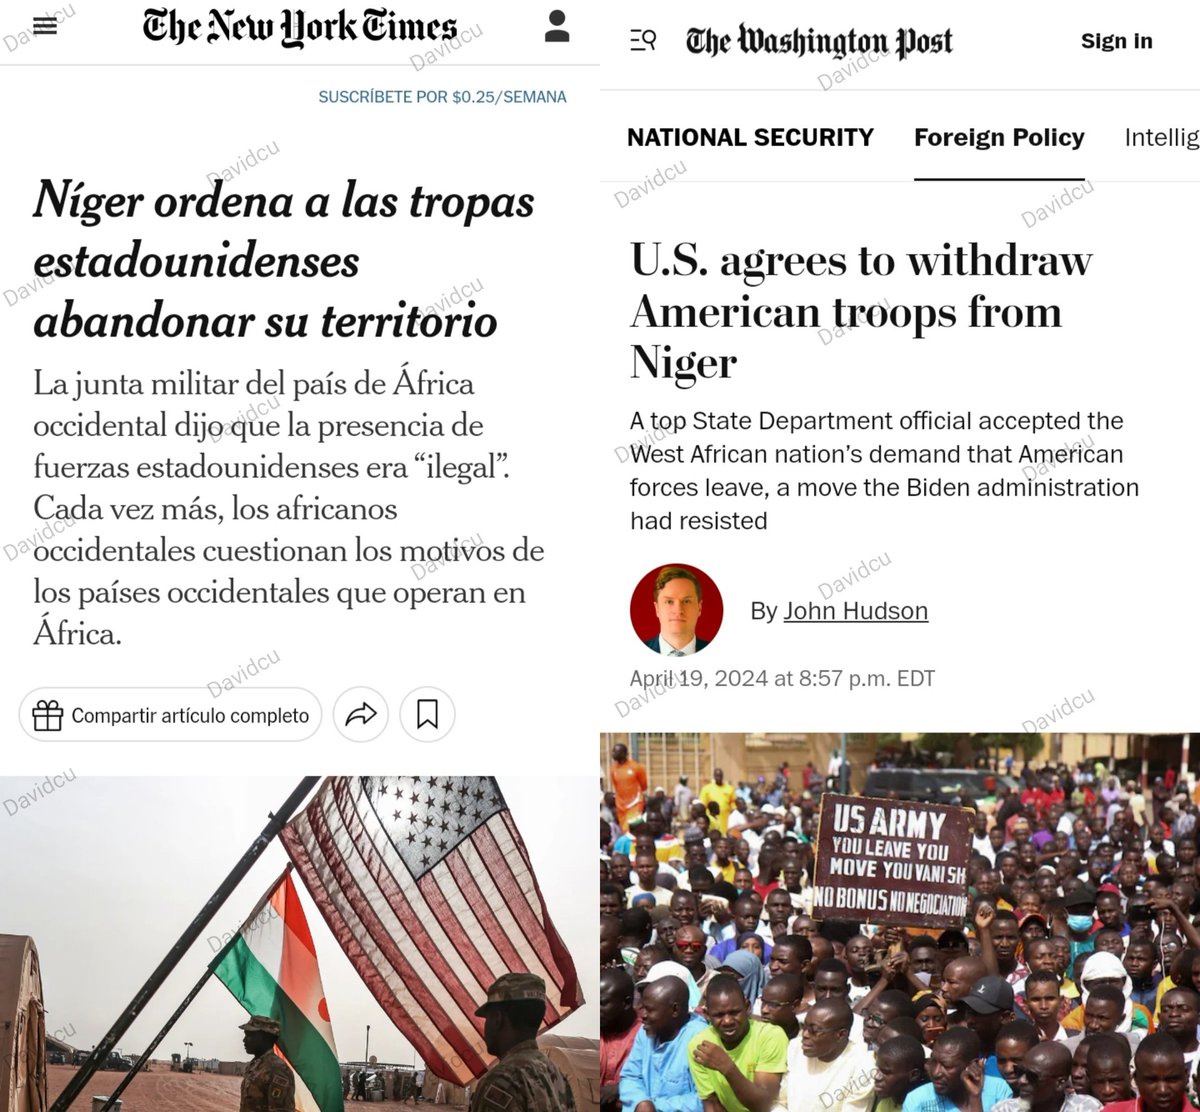 ÁFRICA SE LIBERA del imperialismo gringo colonizador, EEUU acata la orden de Niger y acuerda retirar sus tropas...